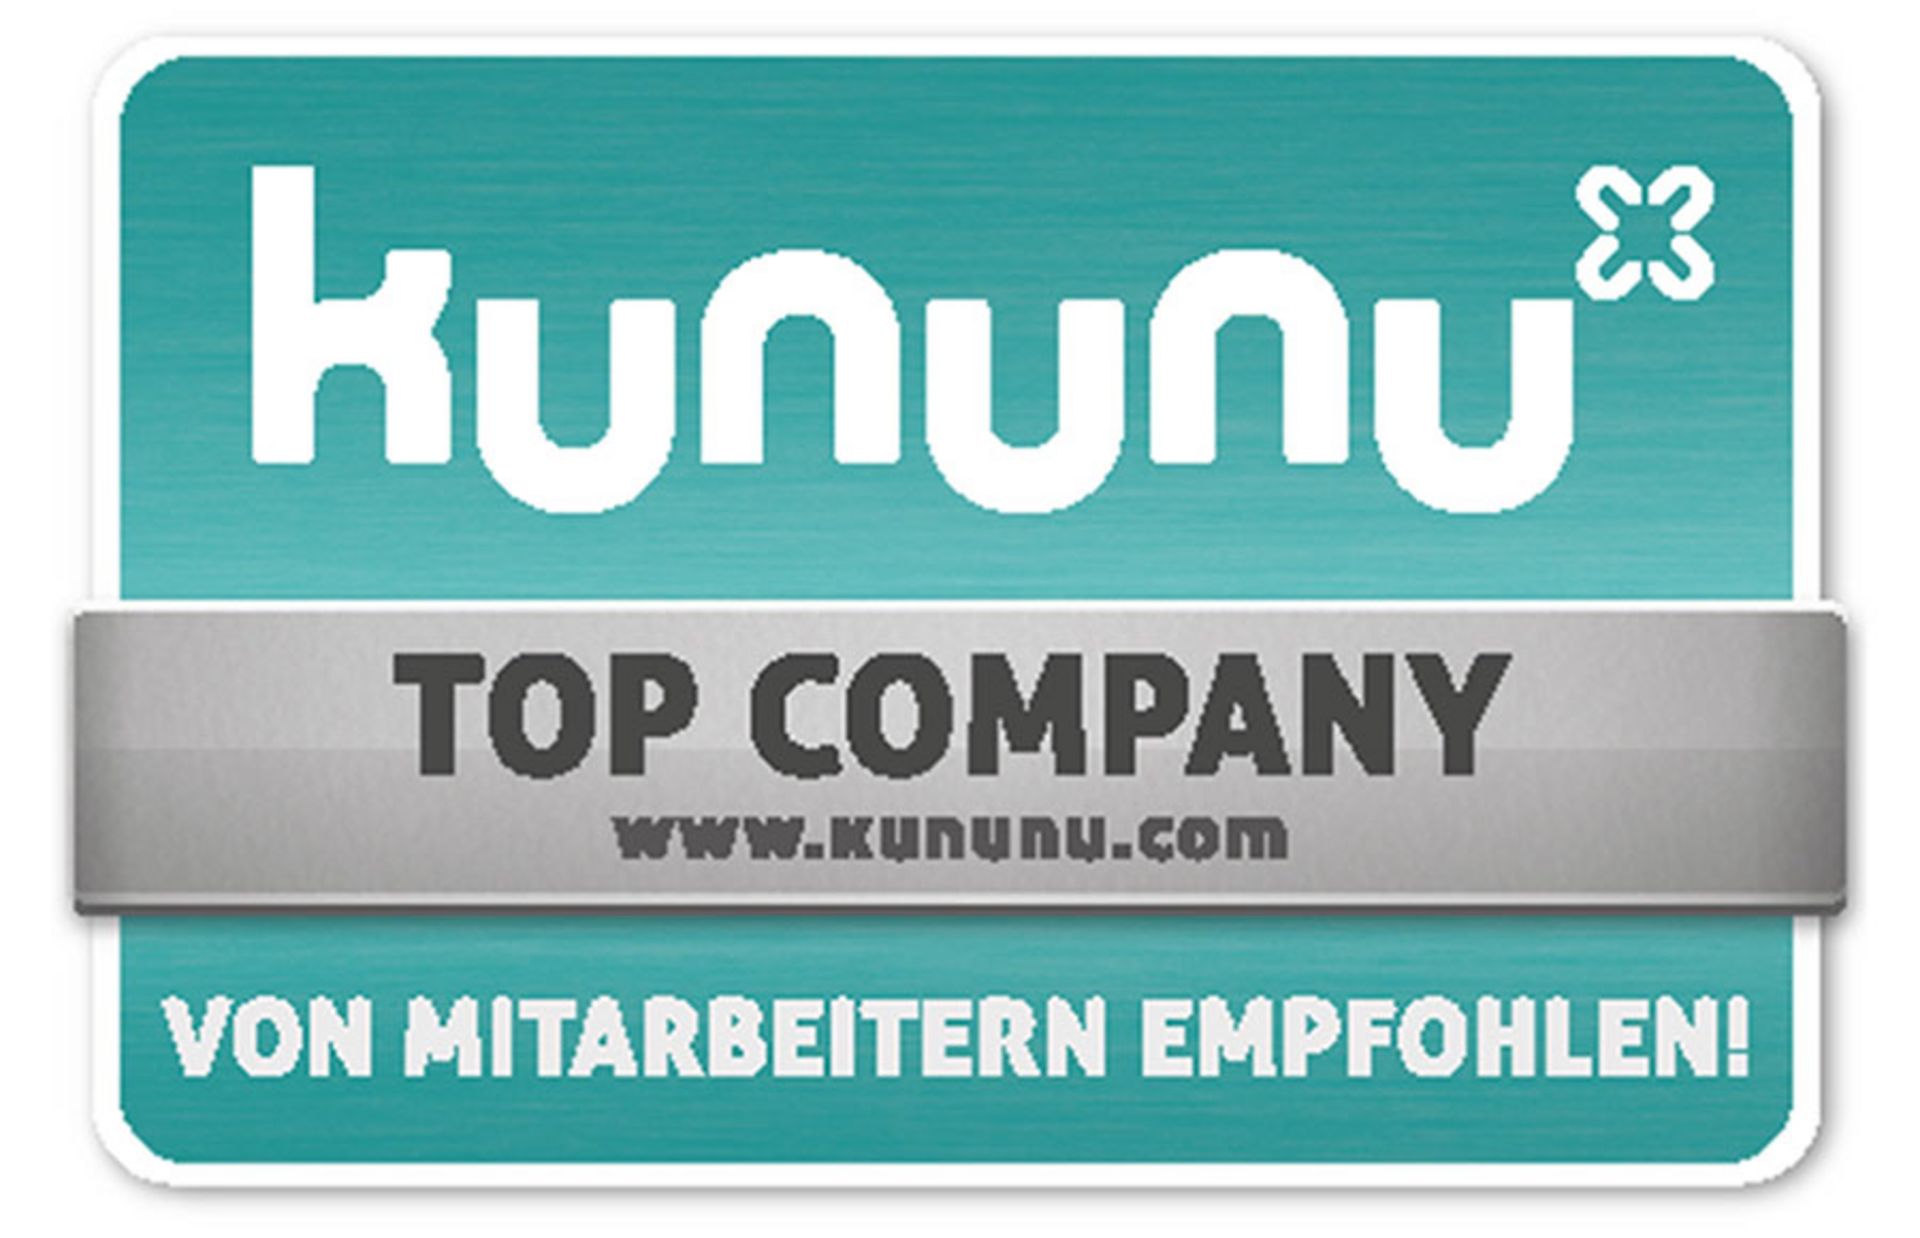 Karriere - Das Gütesiegel für einen proaktiven Umgang mit kununu.com - Top Company - REA